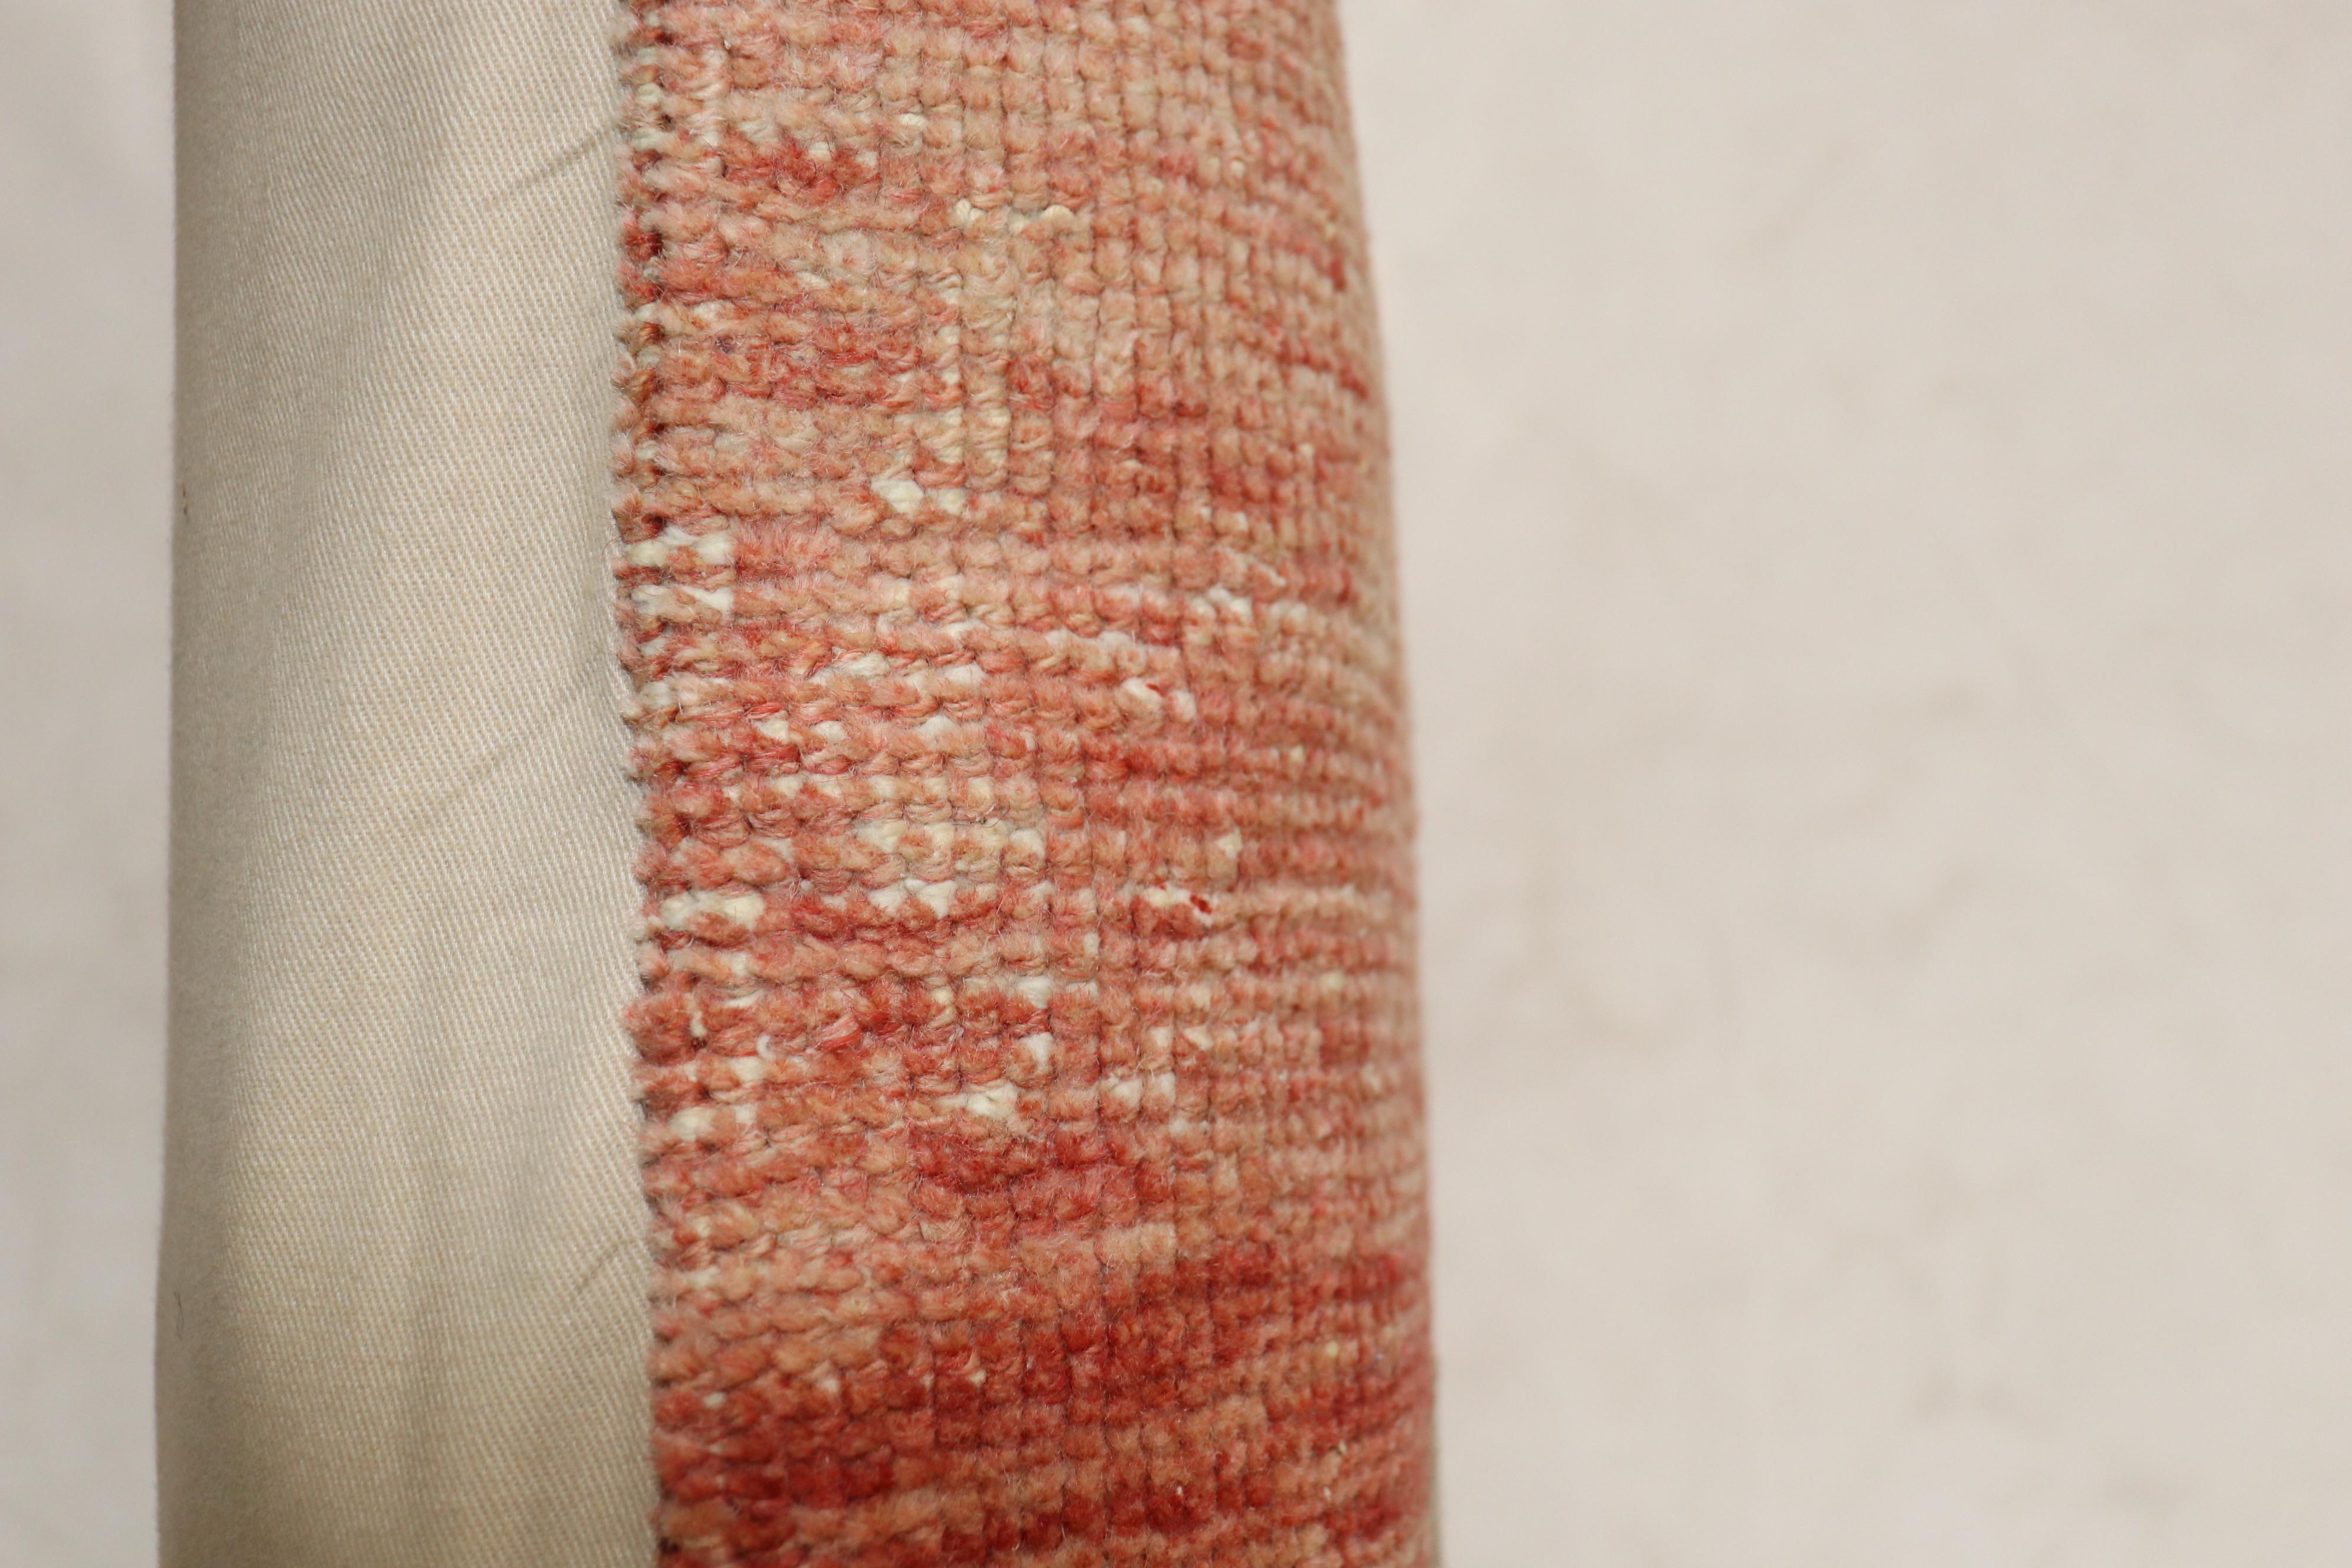 Oreiller réalisé à partir de la bordure d'un tapis turc tribal du 20e siècle.

Mesures : 24